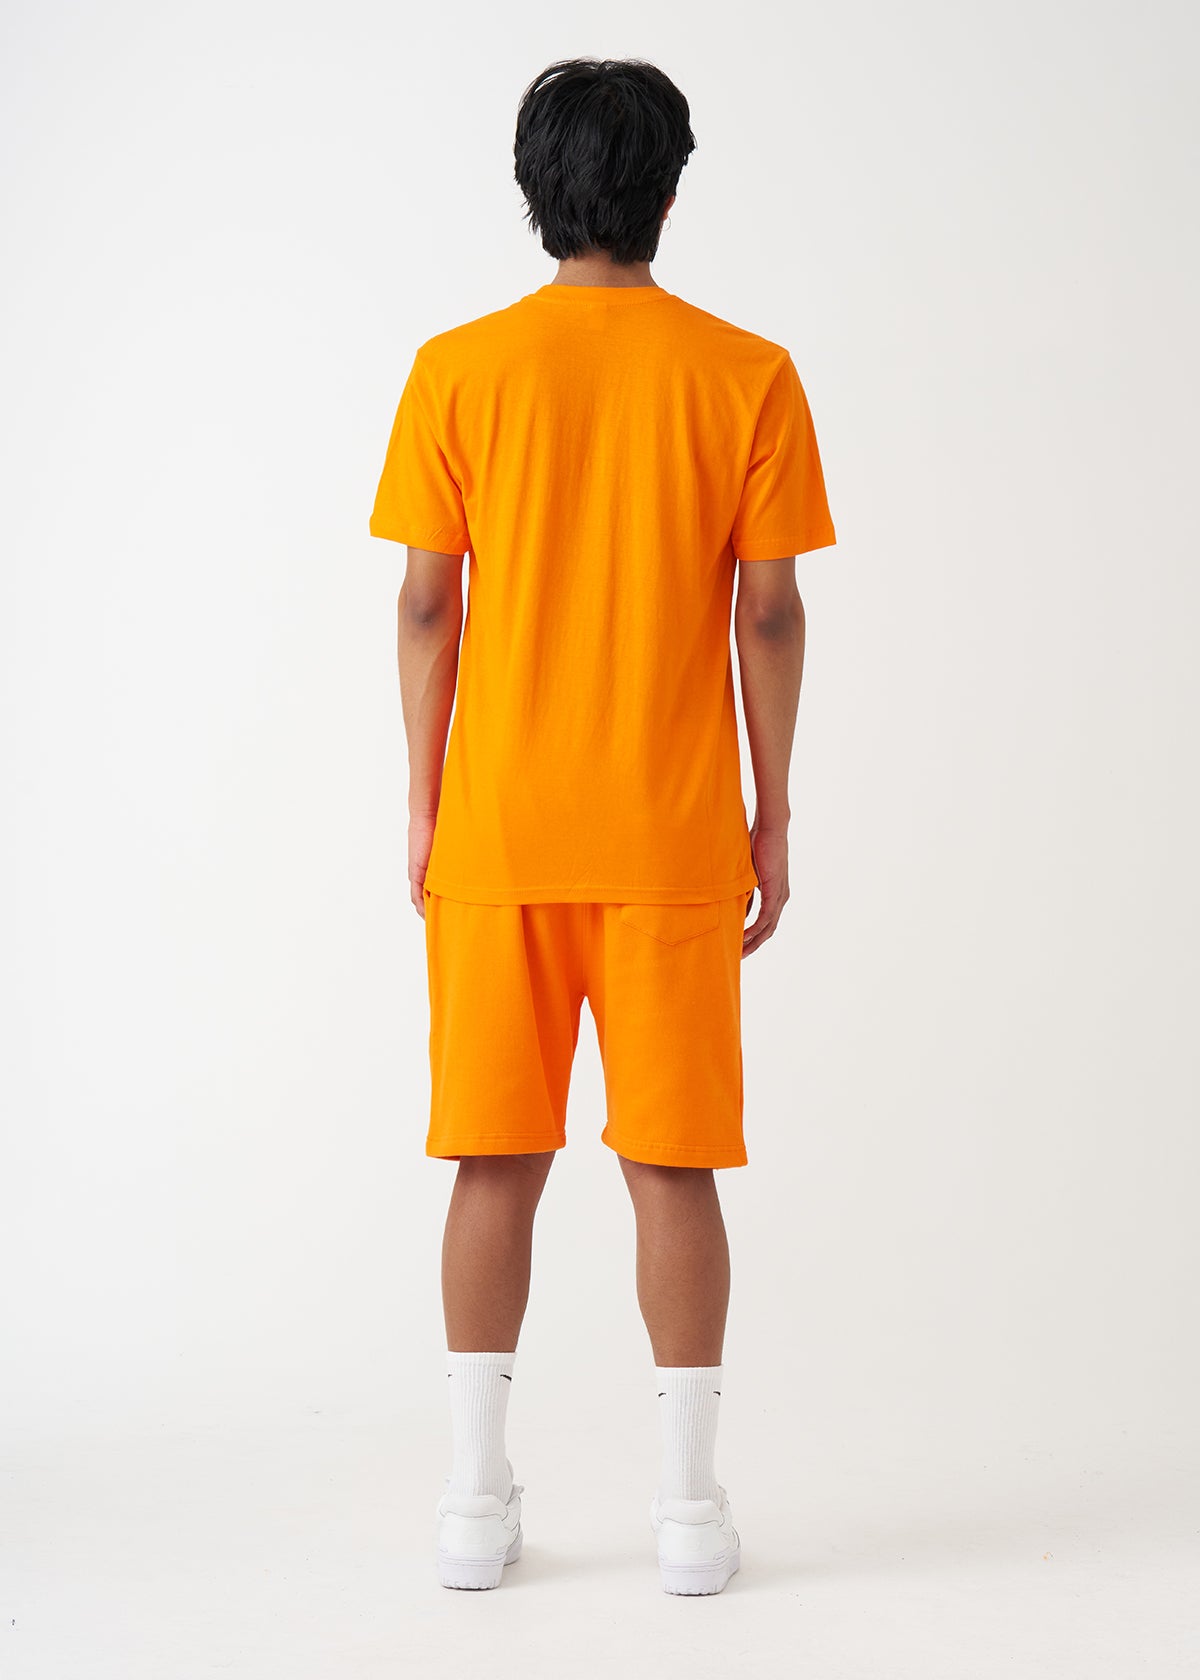 Orange T-Shirt And Short Set